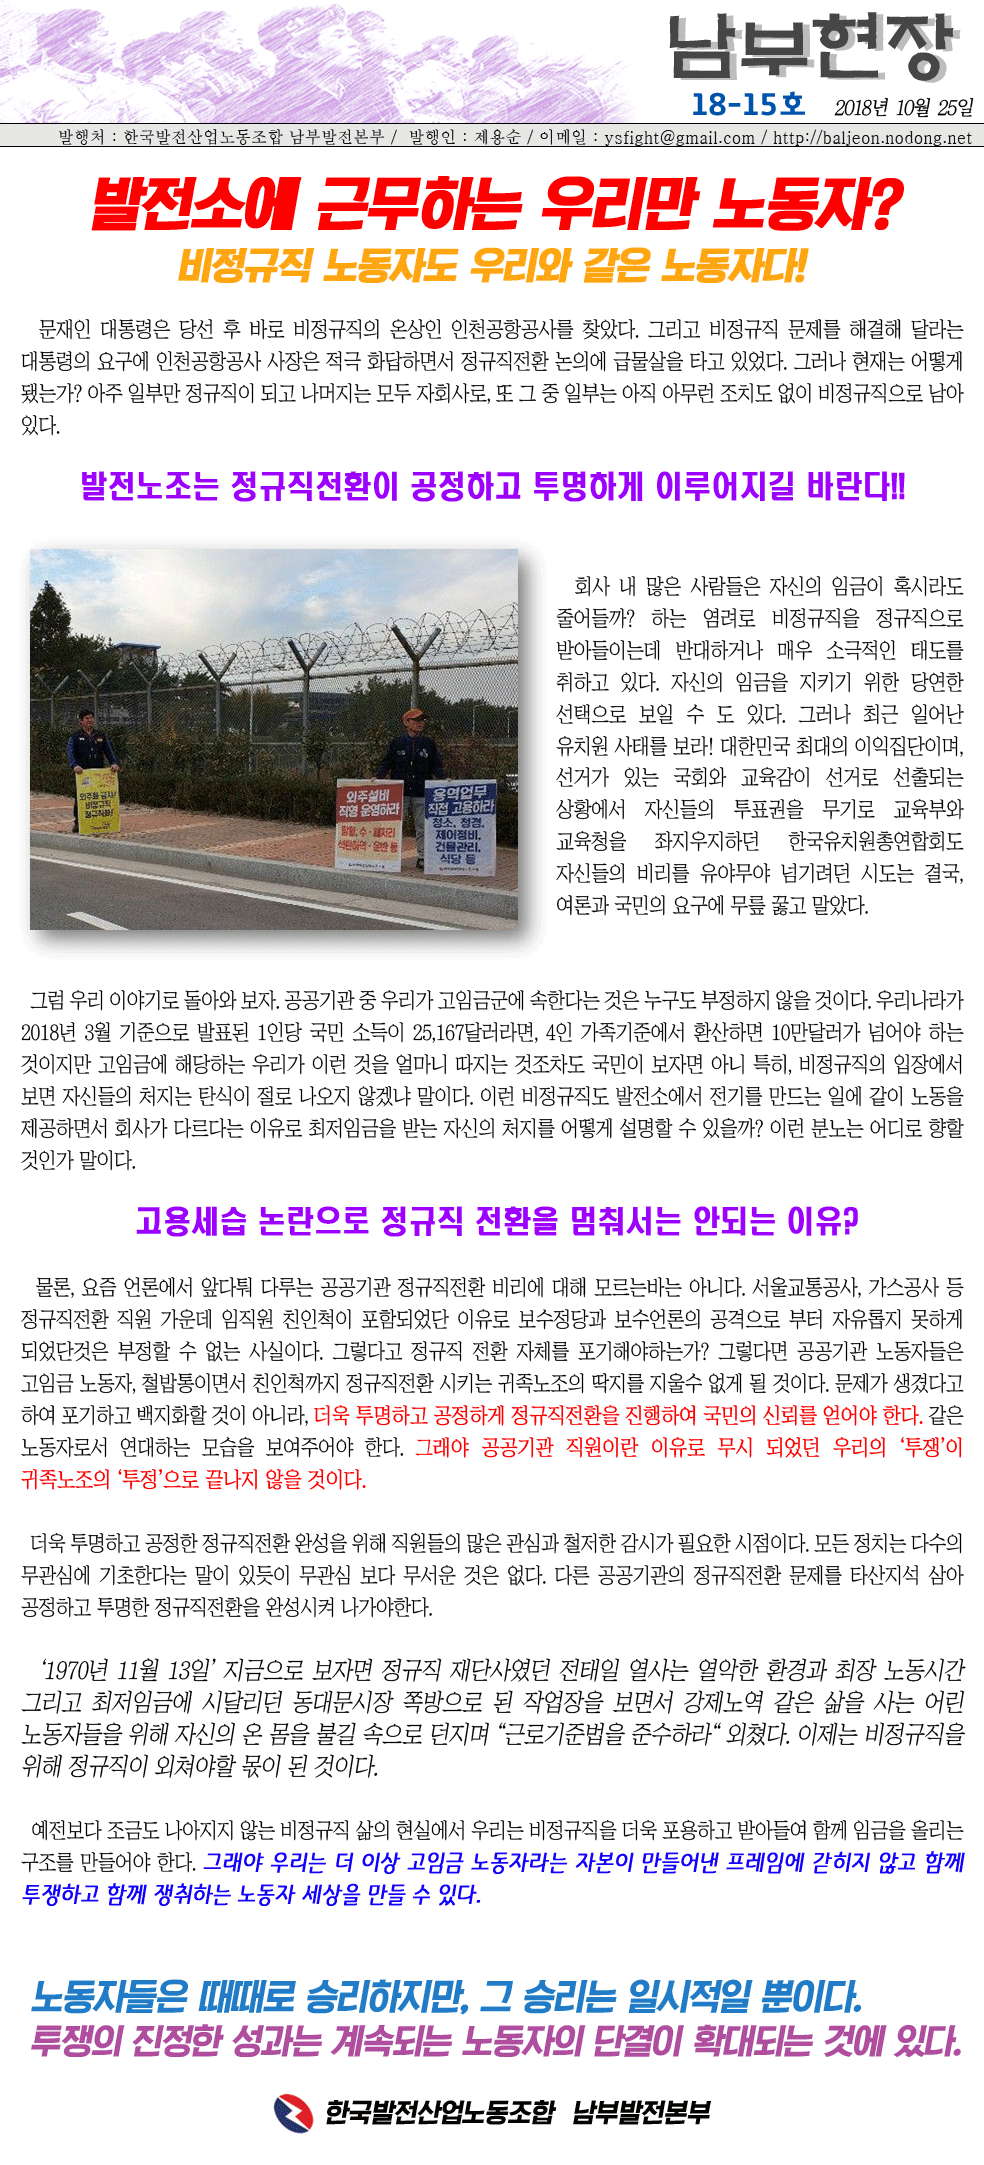 남부현장 18-15호 정규직전환(2018.10.25).gif